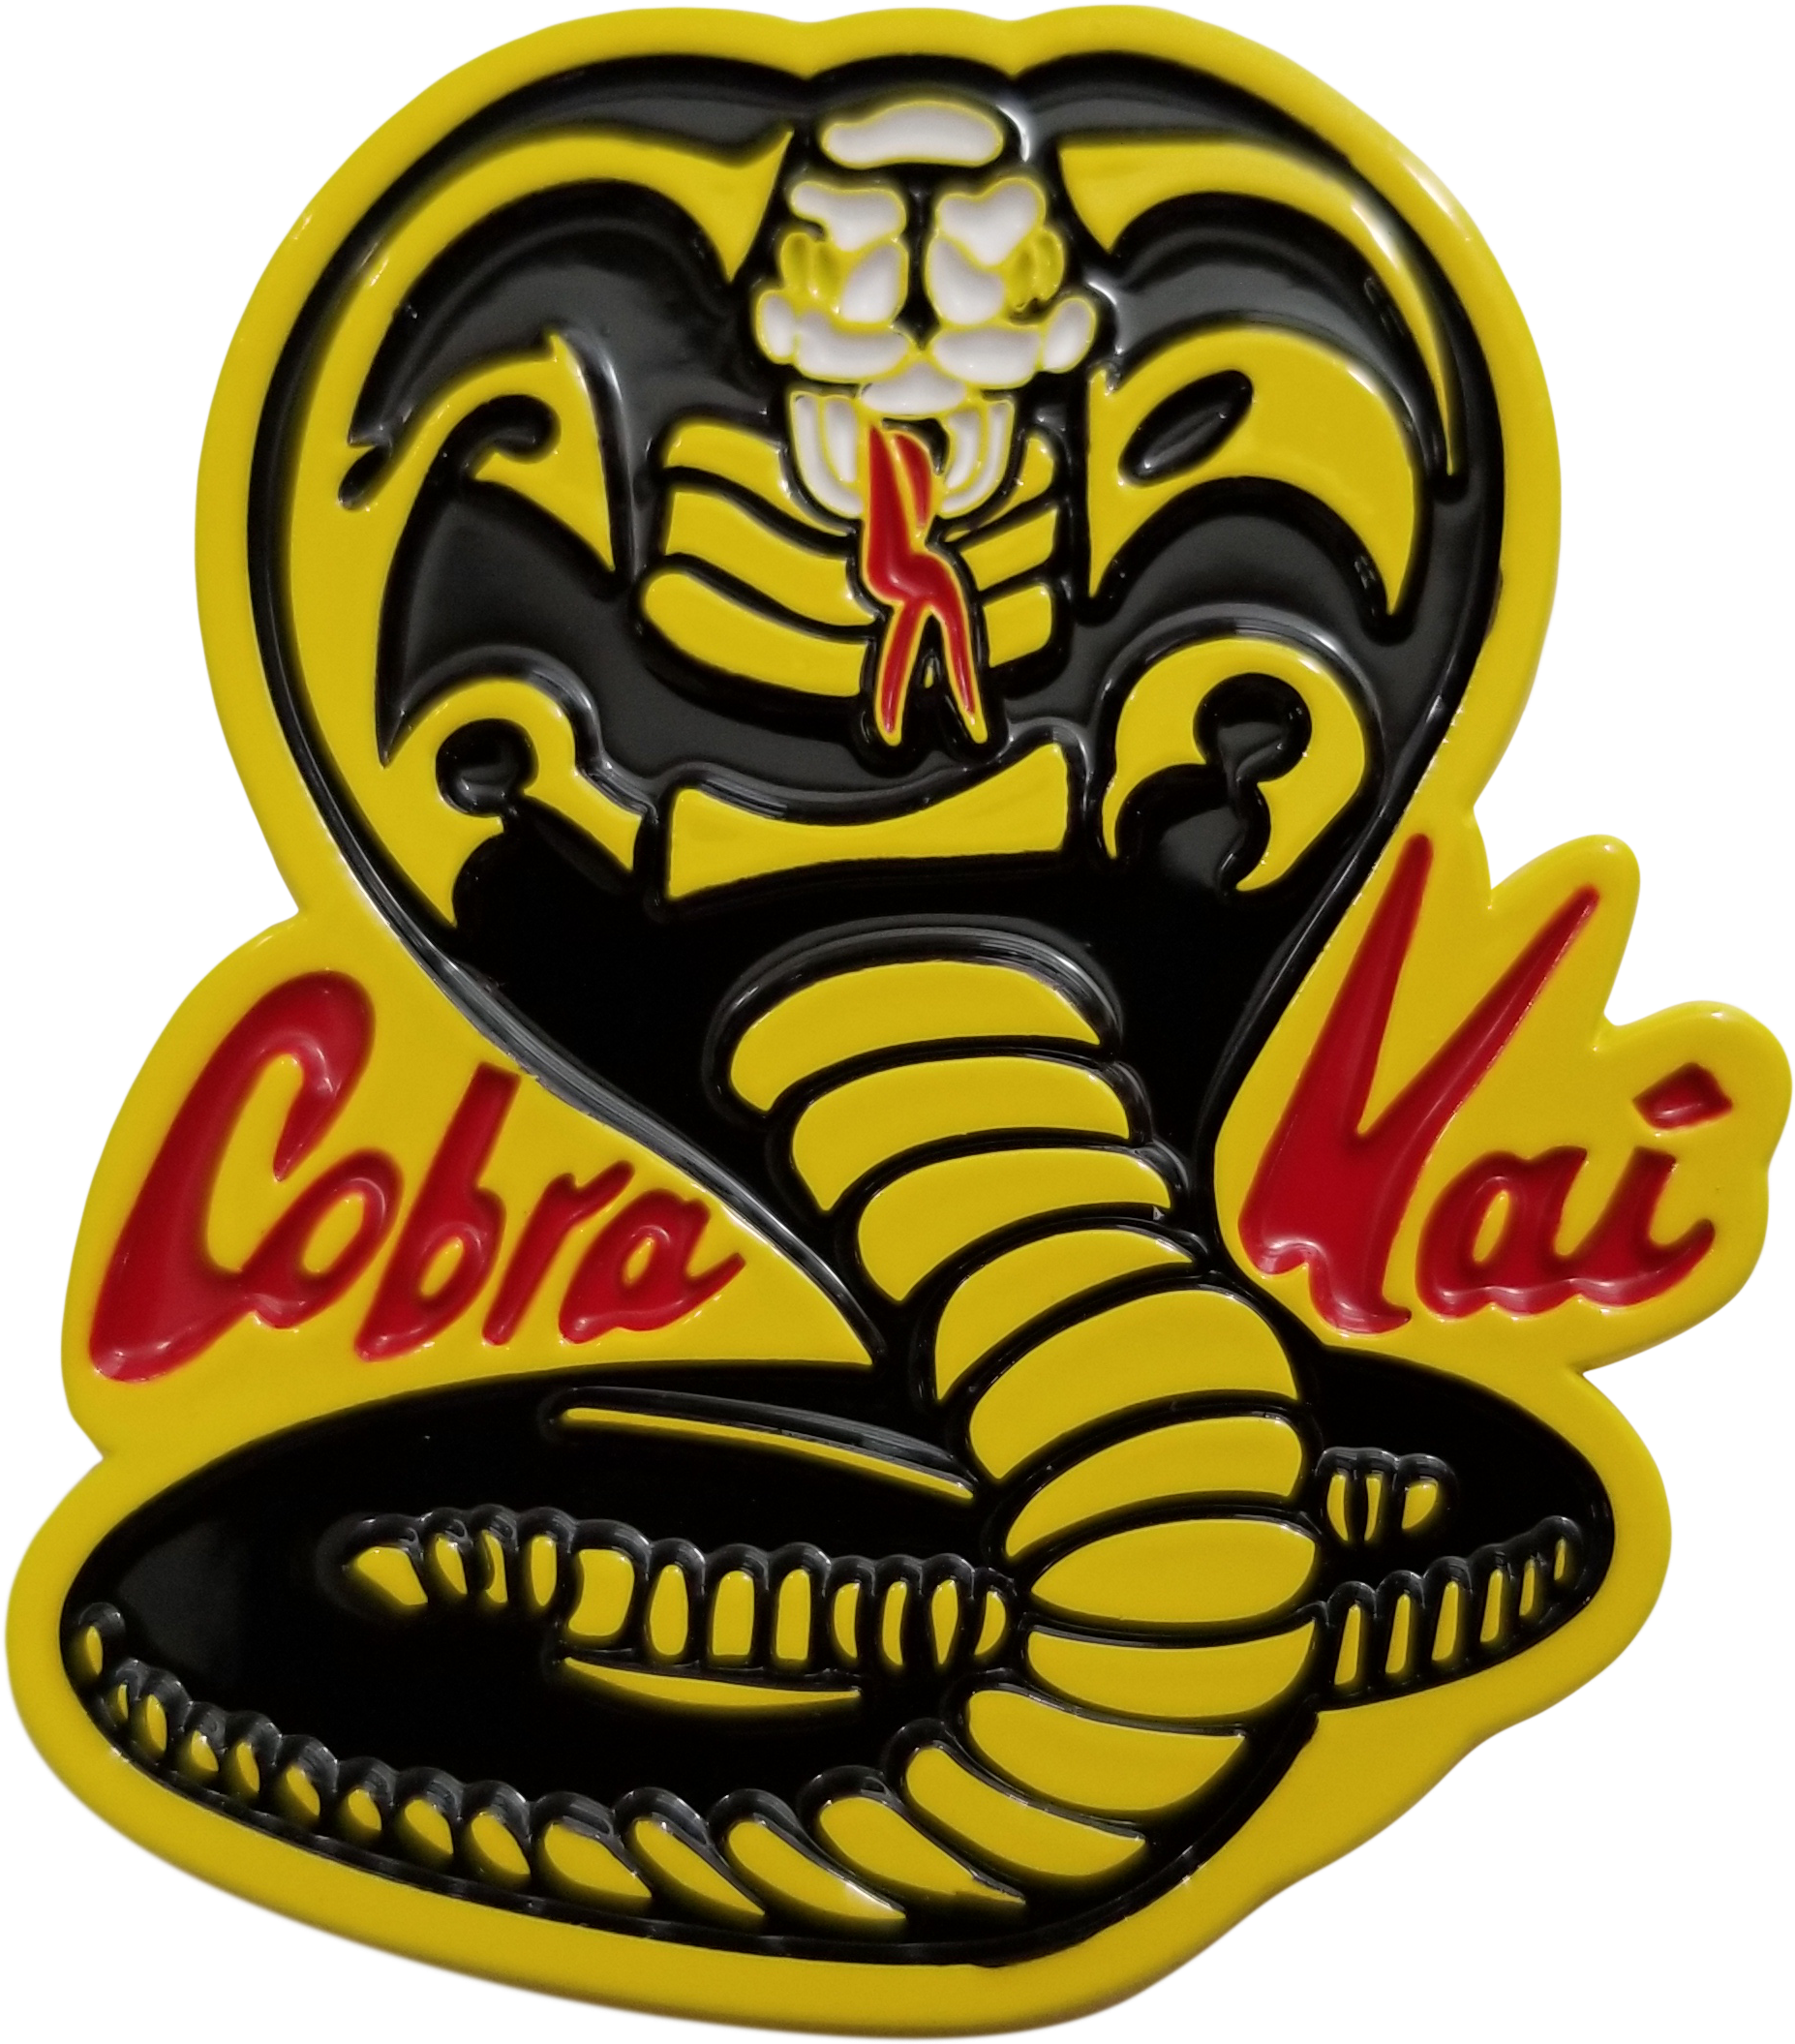 Logo Cobra Kai Download HD PNG Image